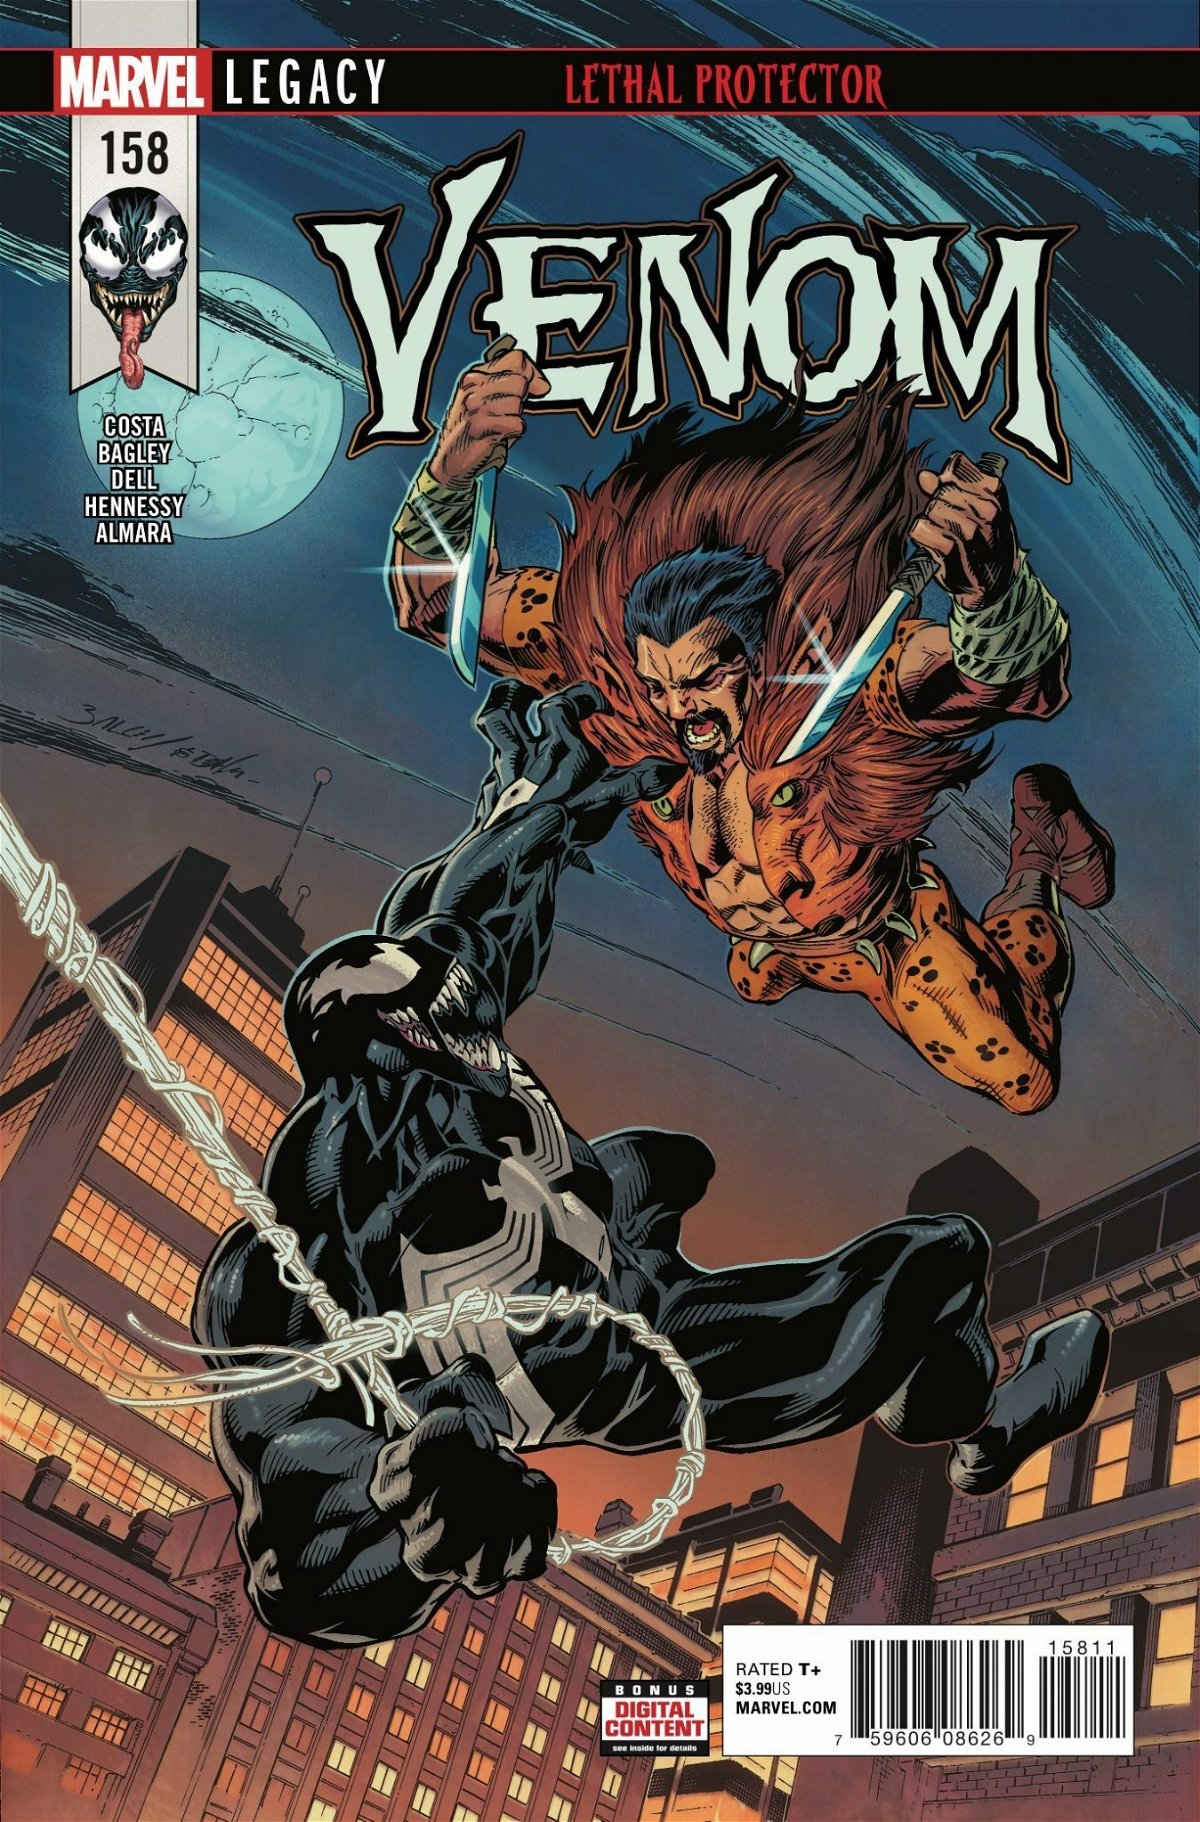 Kraven il cacciatore il lotta contro Venom